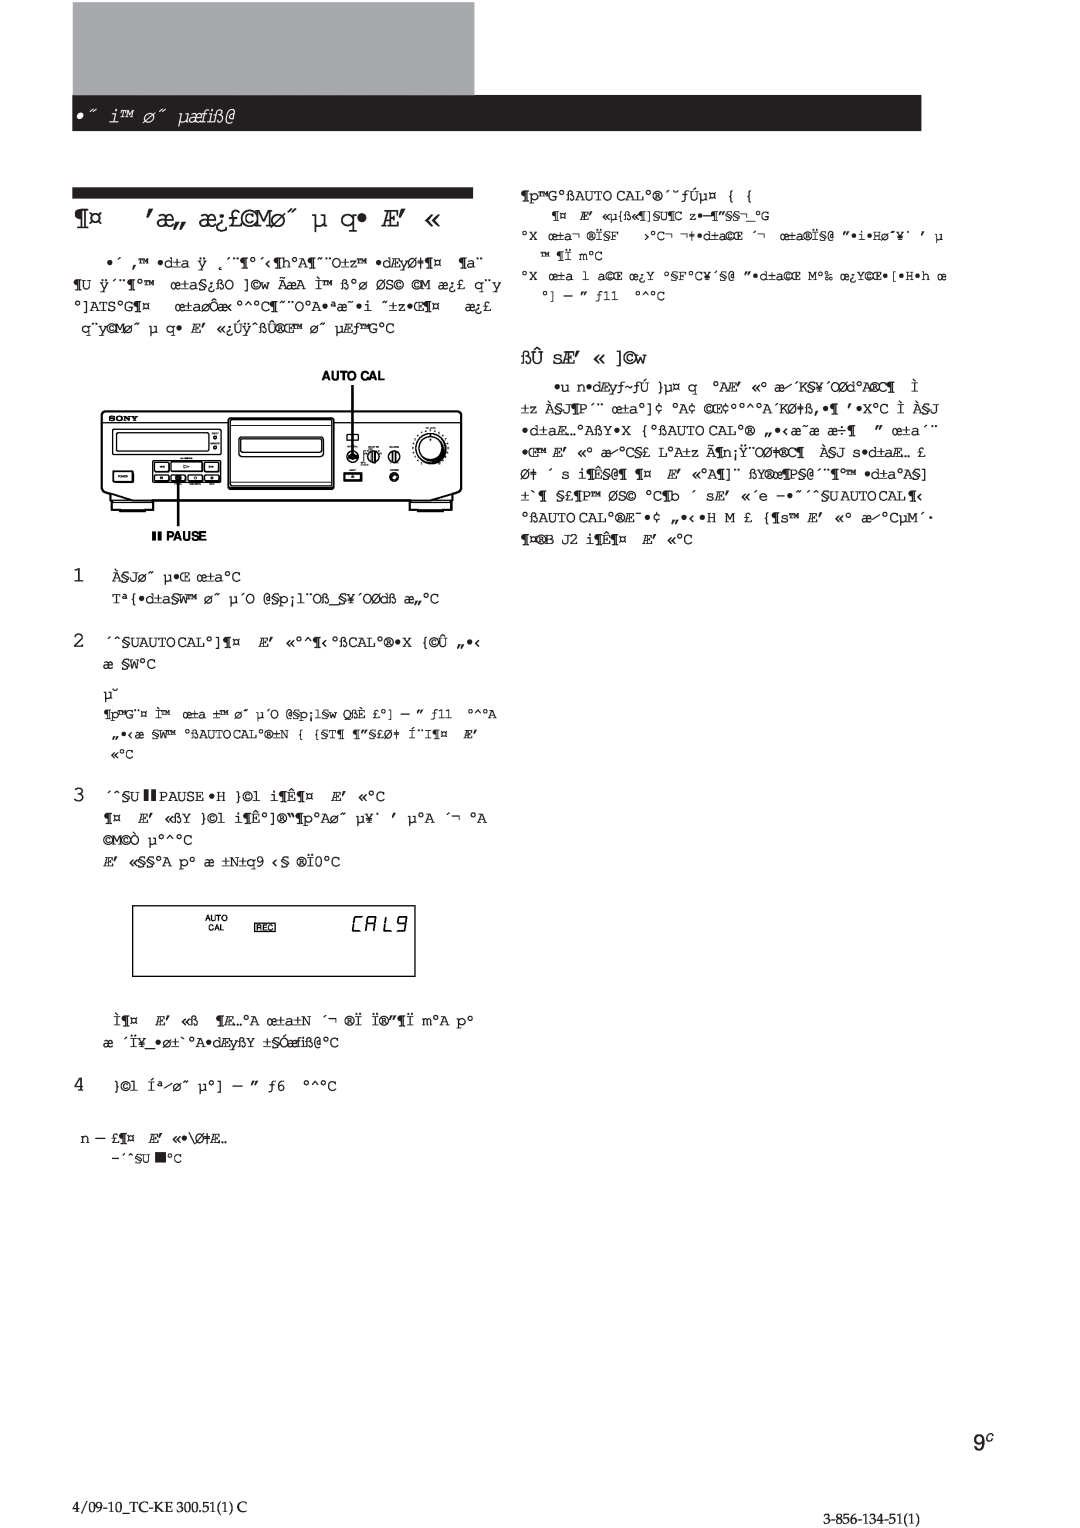 Sony TC-KE300 operating instructions ¶¤ ’æ„ æ¿£Mø˝ µ q Æ’ «, ˝ ˝iiø˝ø˝µæﬁß@, ßÛ sÆ’ « w, CAL9 